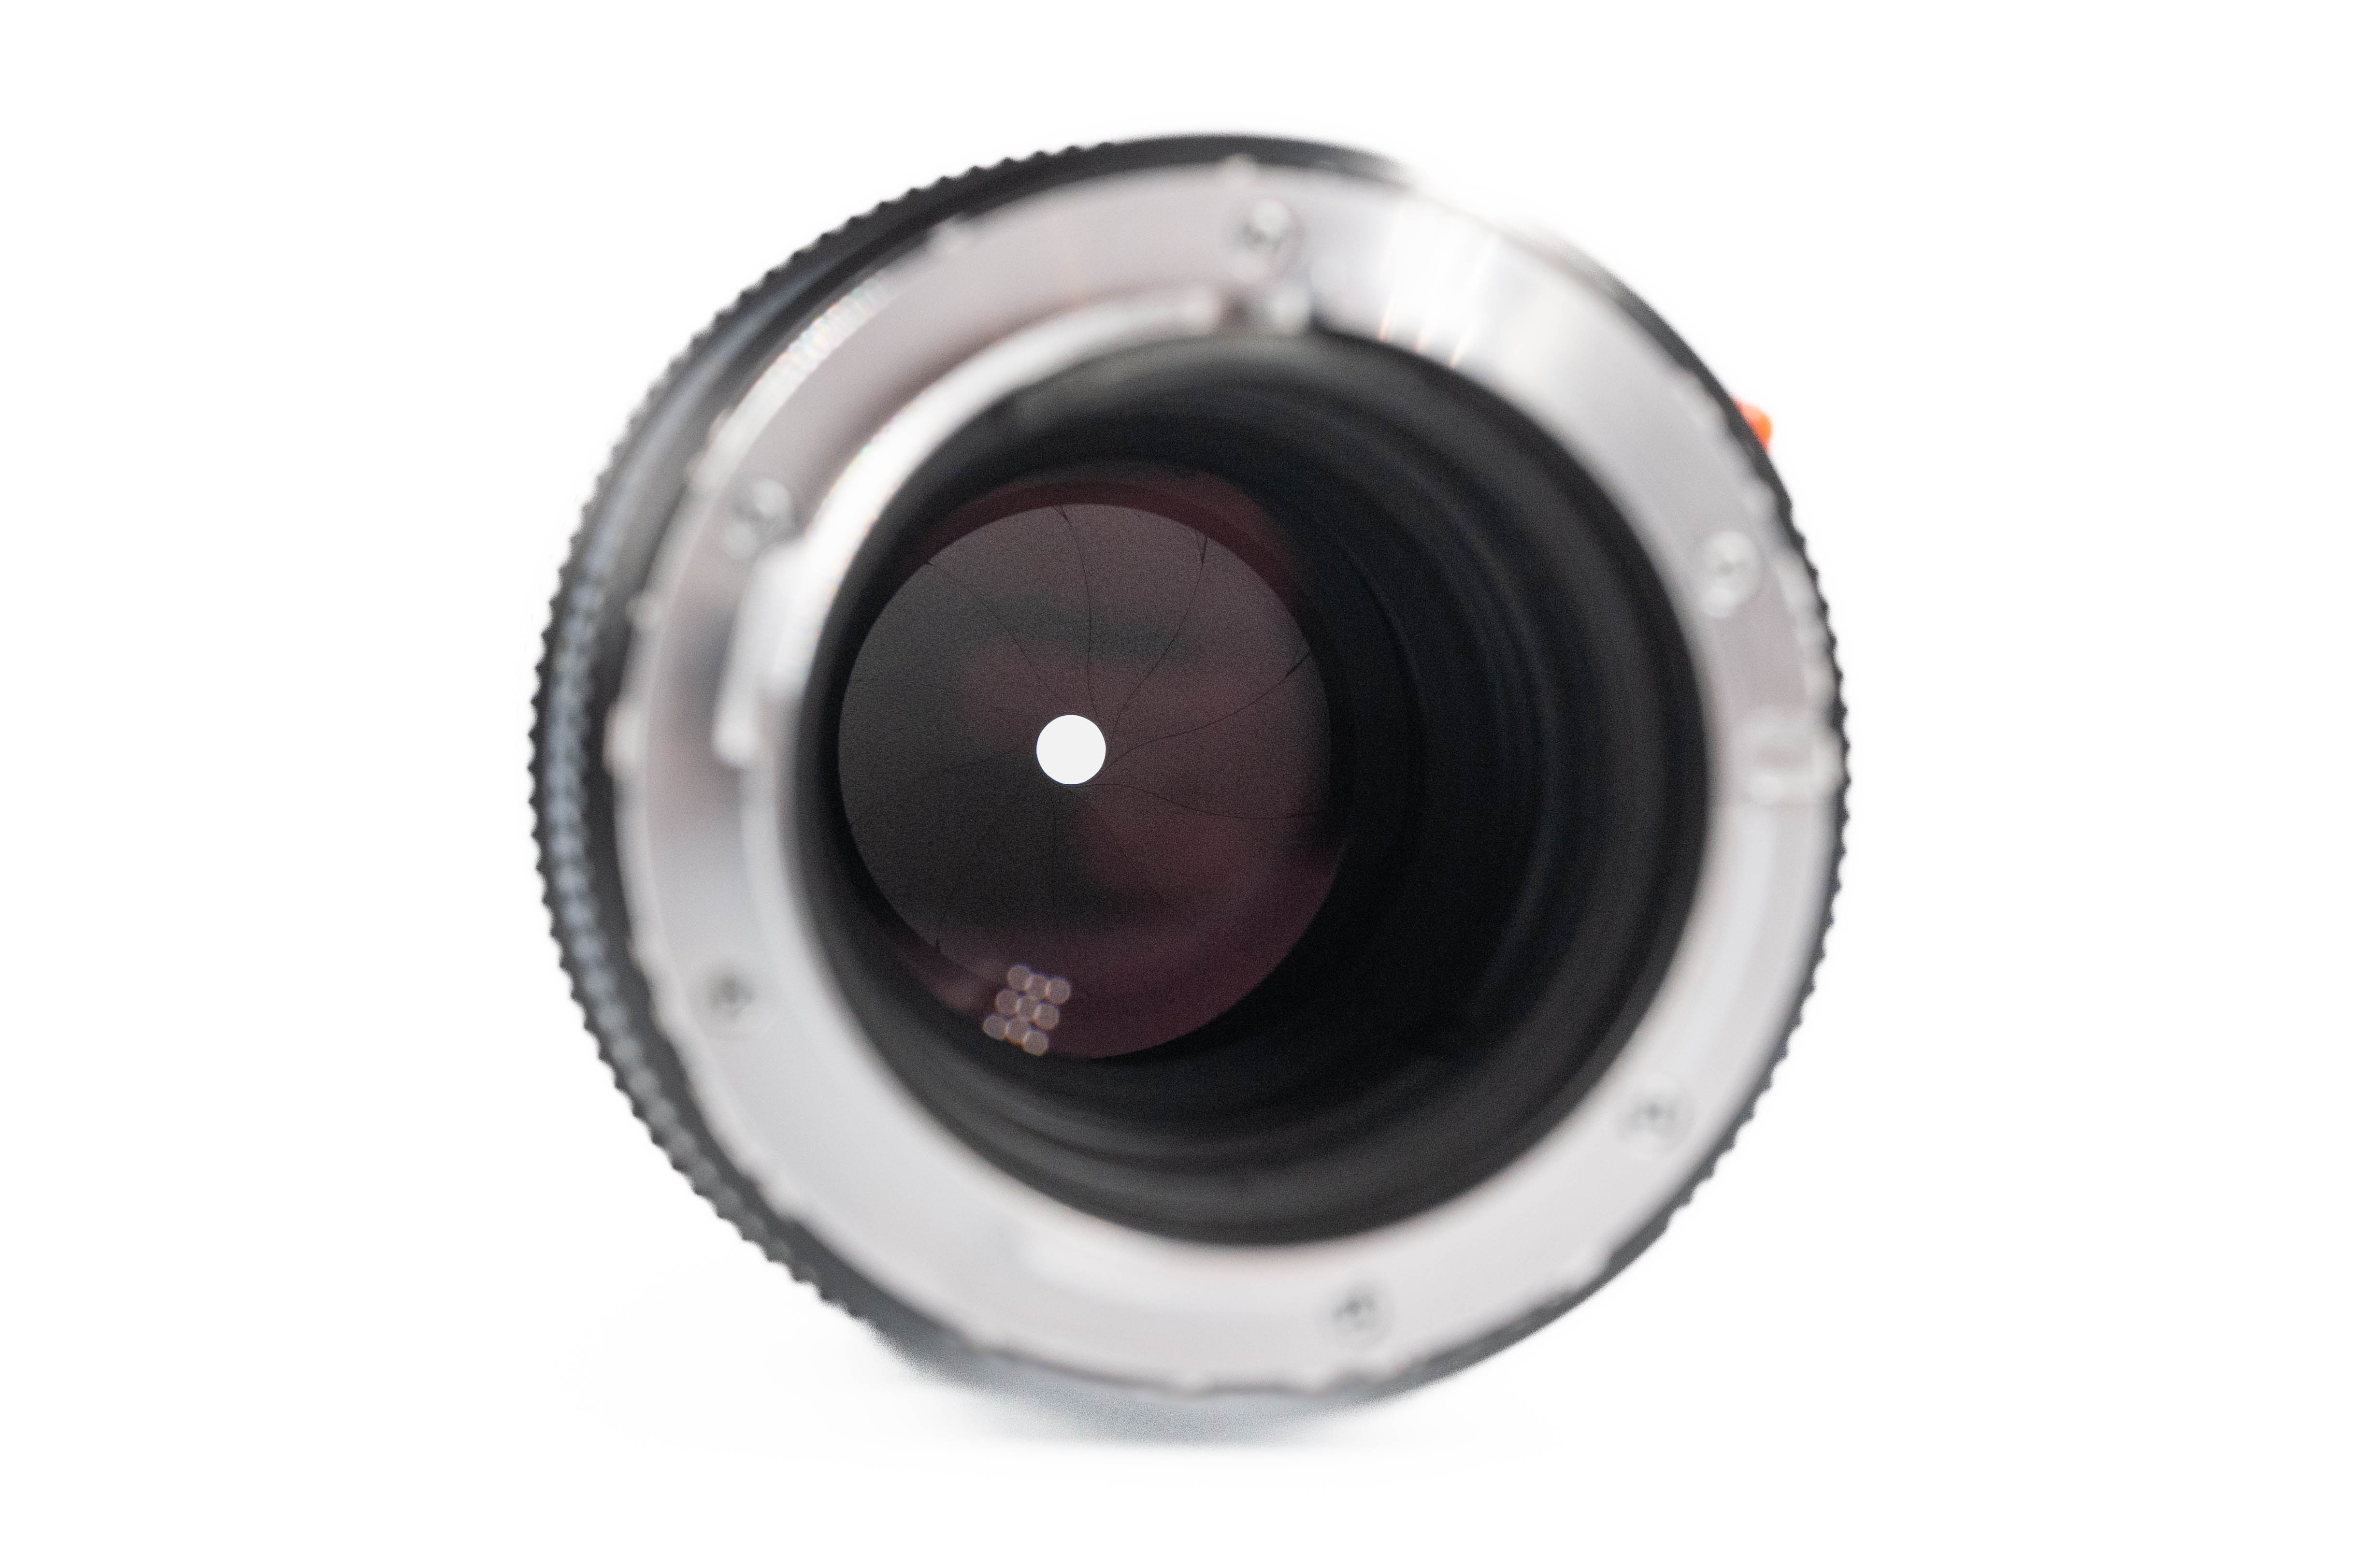 Leica APO-Telyt-M 135mm f/3.4 11889